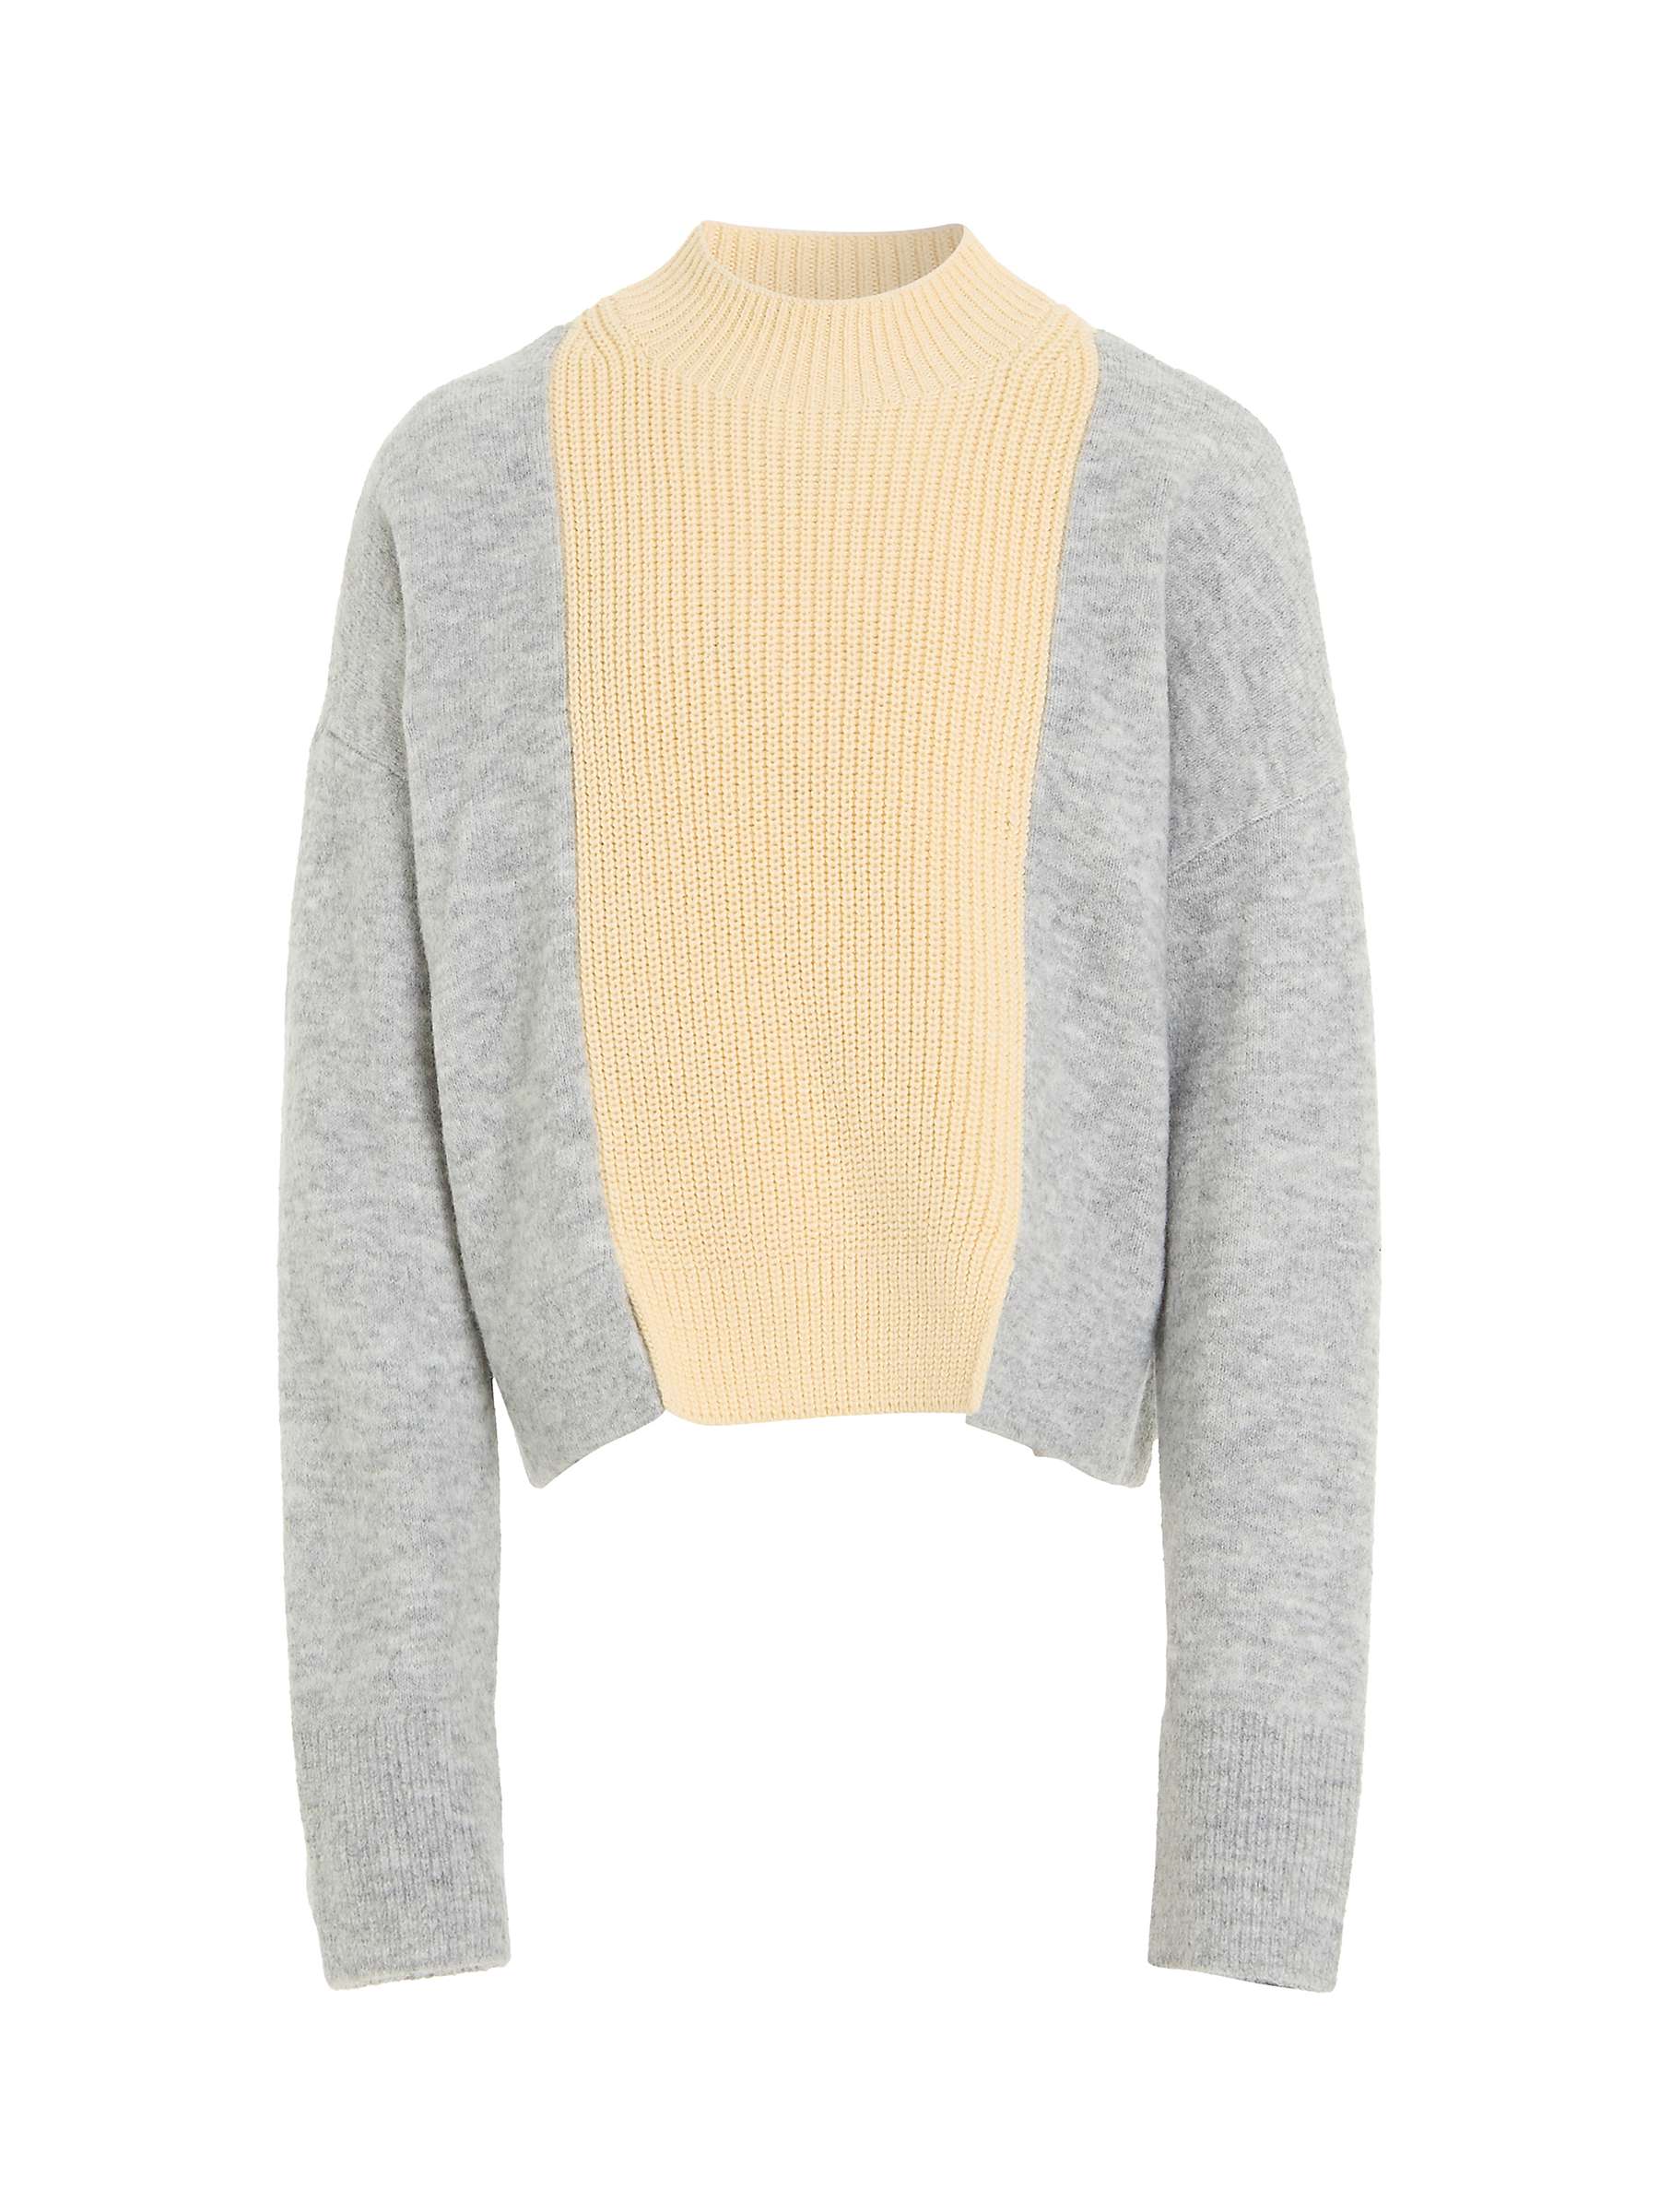 Buy Calvin Klein Kids' Mixed Stitch Sweatshirt, Light Grey Heather Online at johnlewis.com